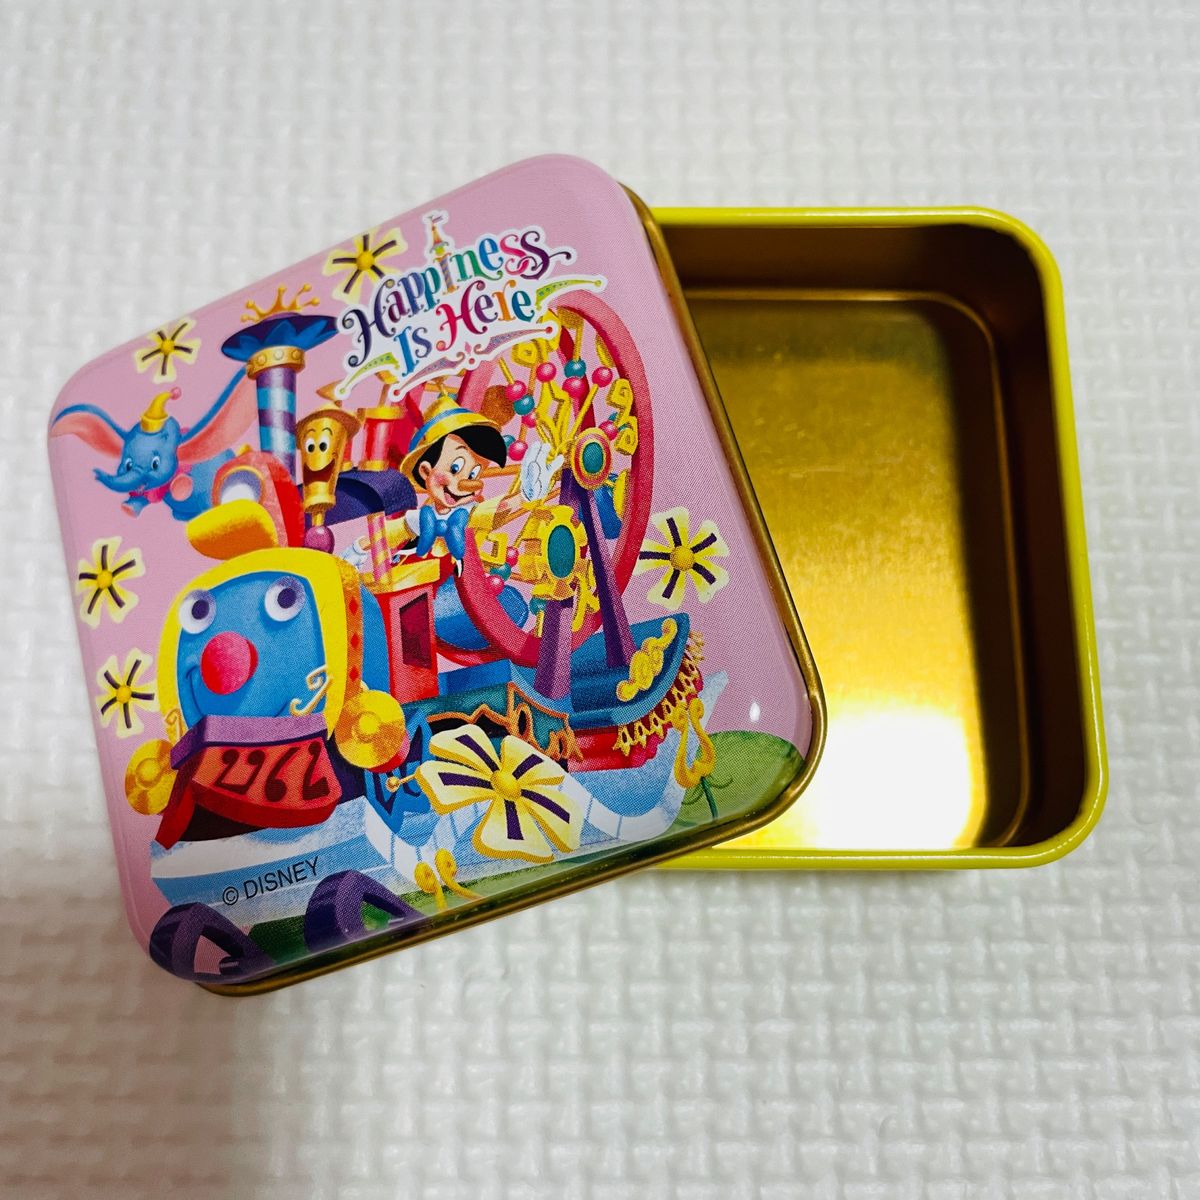 ディズニー 空き缶 缶 ピノキオ お菓子缶